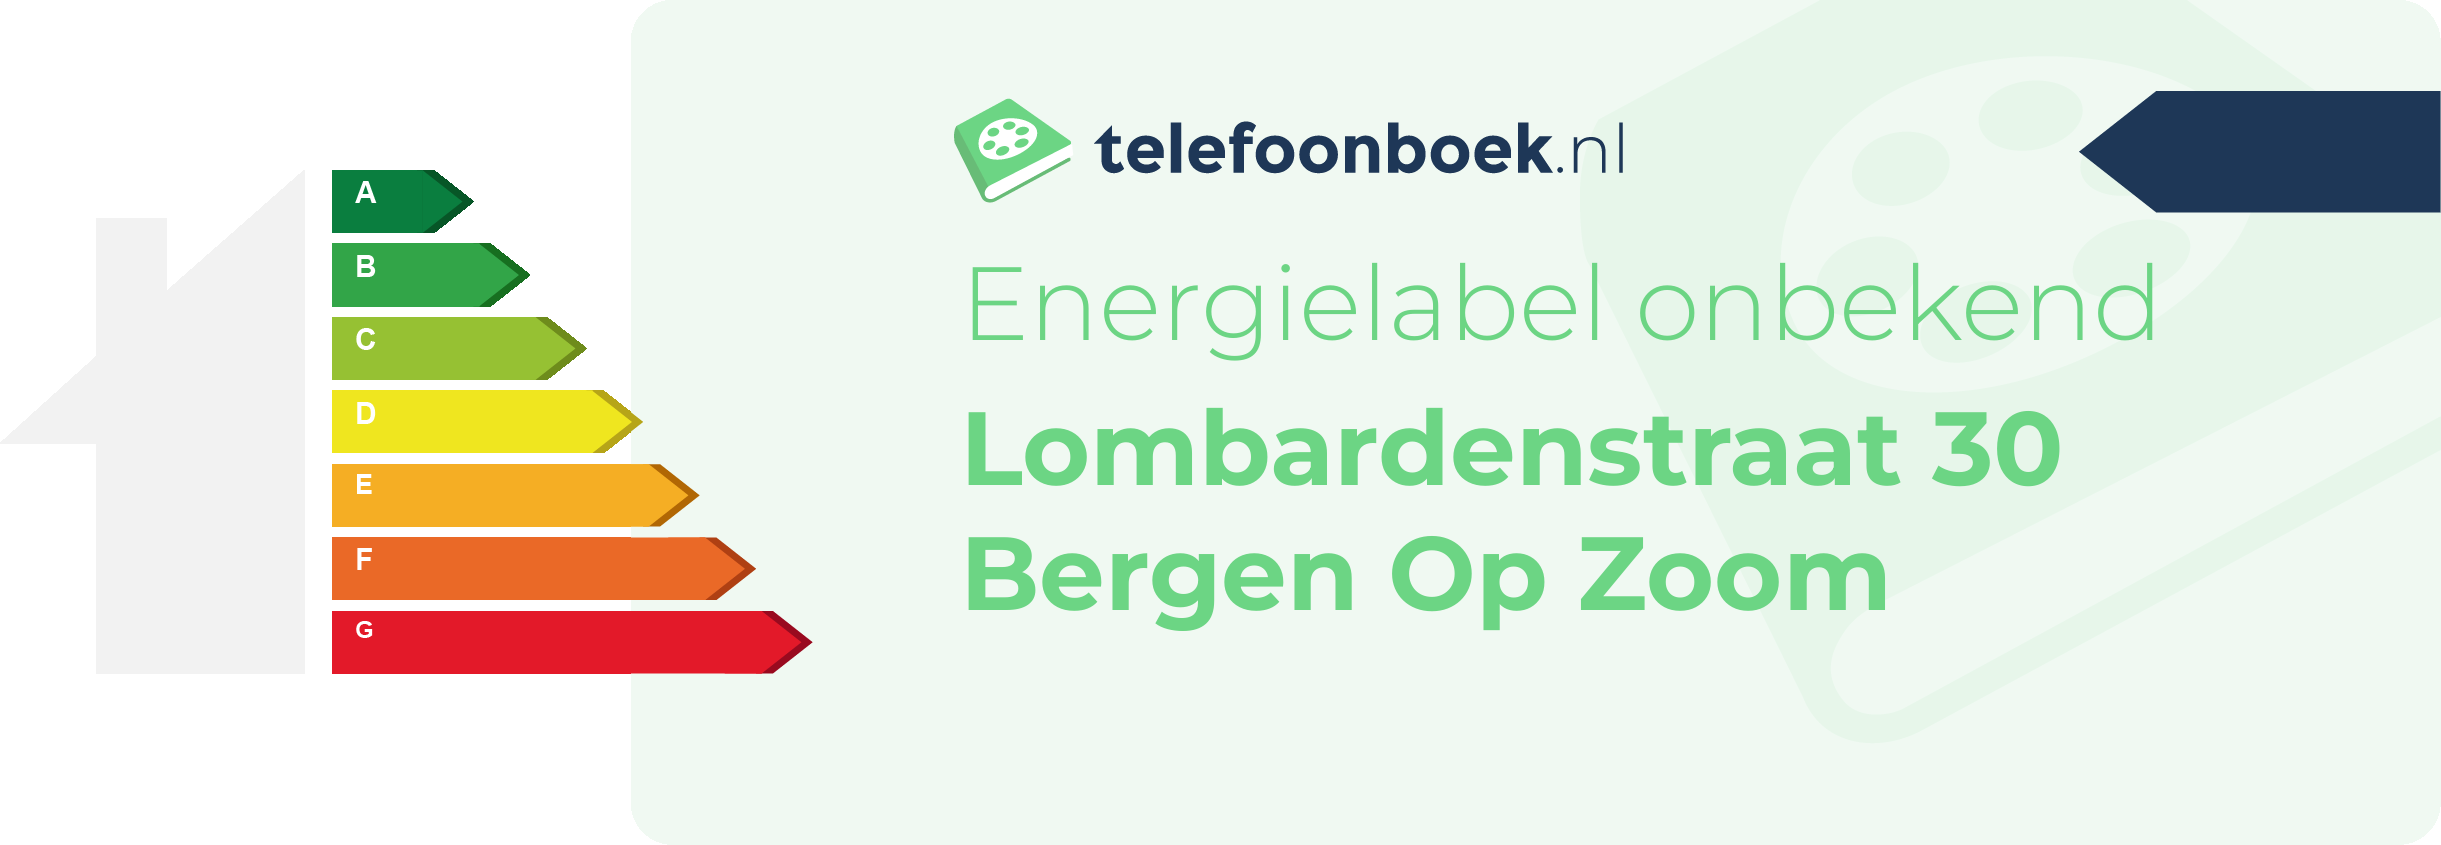 Energielabel Lombardenstraat 30 Bergen Op Zoom